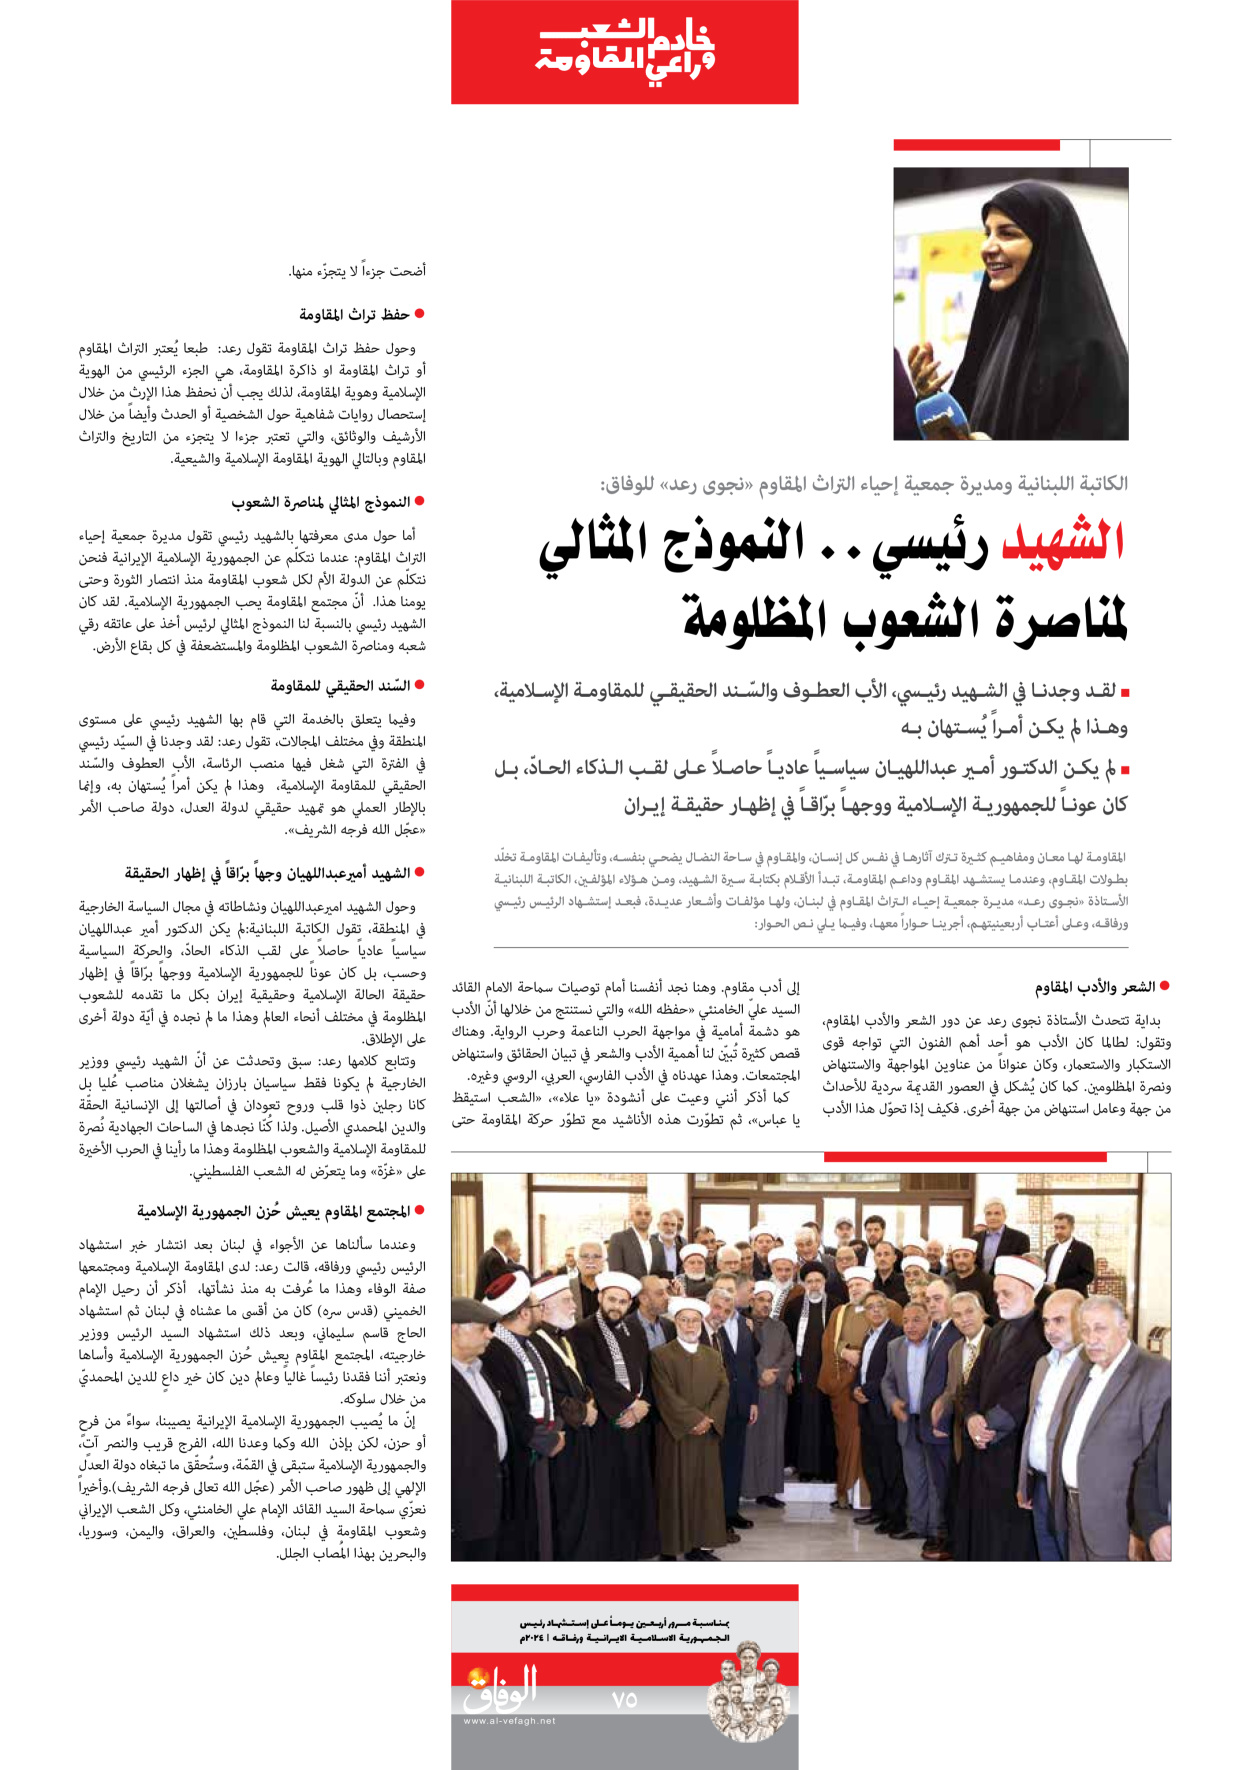 صحیفة ایران الدولیة الوفاق - ملحق ویژه نامه چهلم شهید رییسی - ٢٩ يونيو ٢٠٢٤ - الصفحة ۷٥